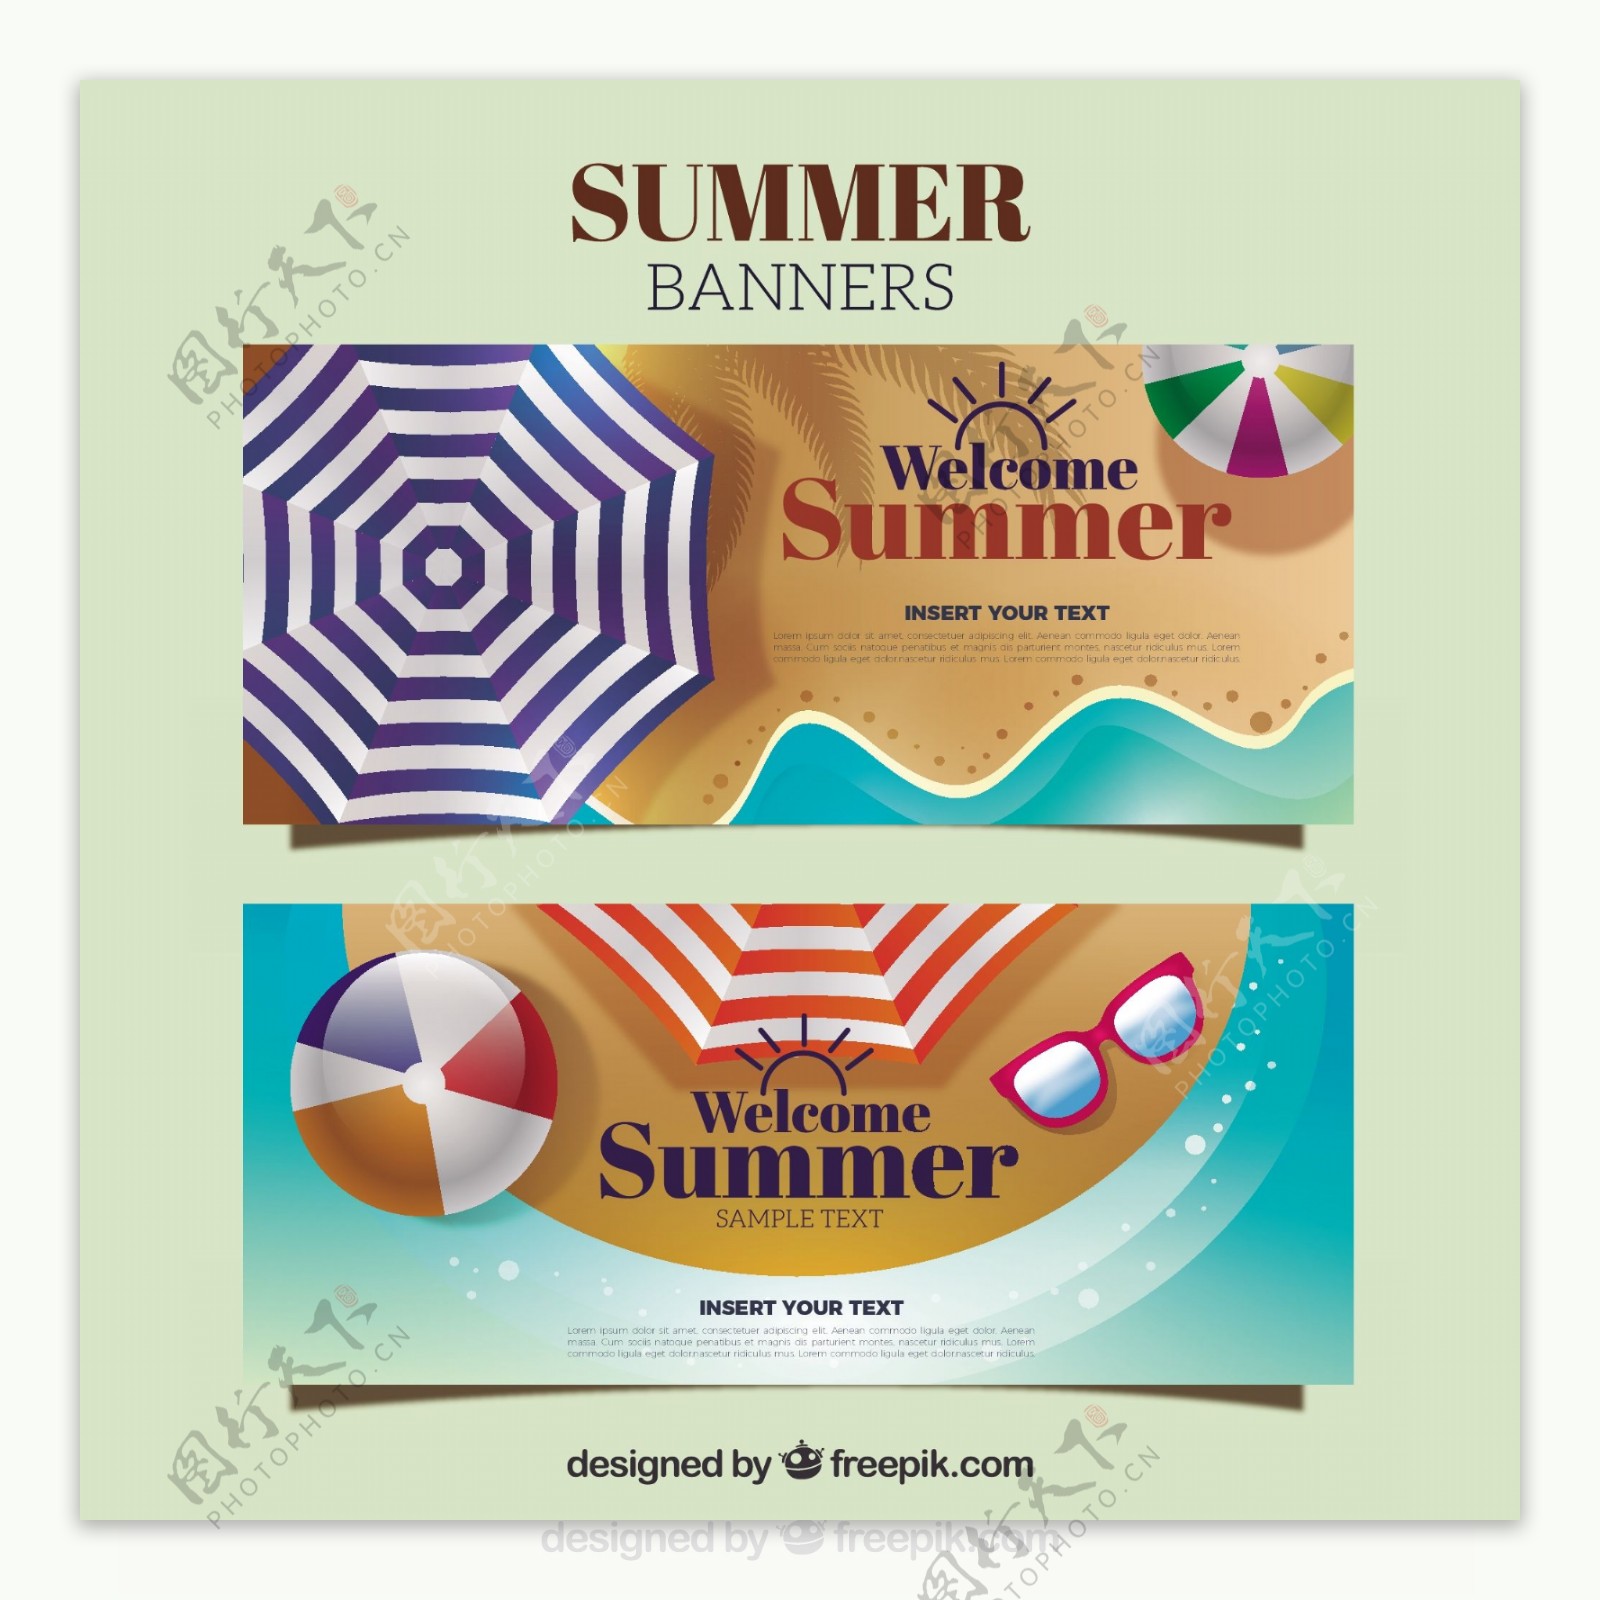 扁平风格夏季沙滩装饰元素横幅